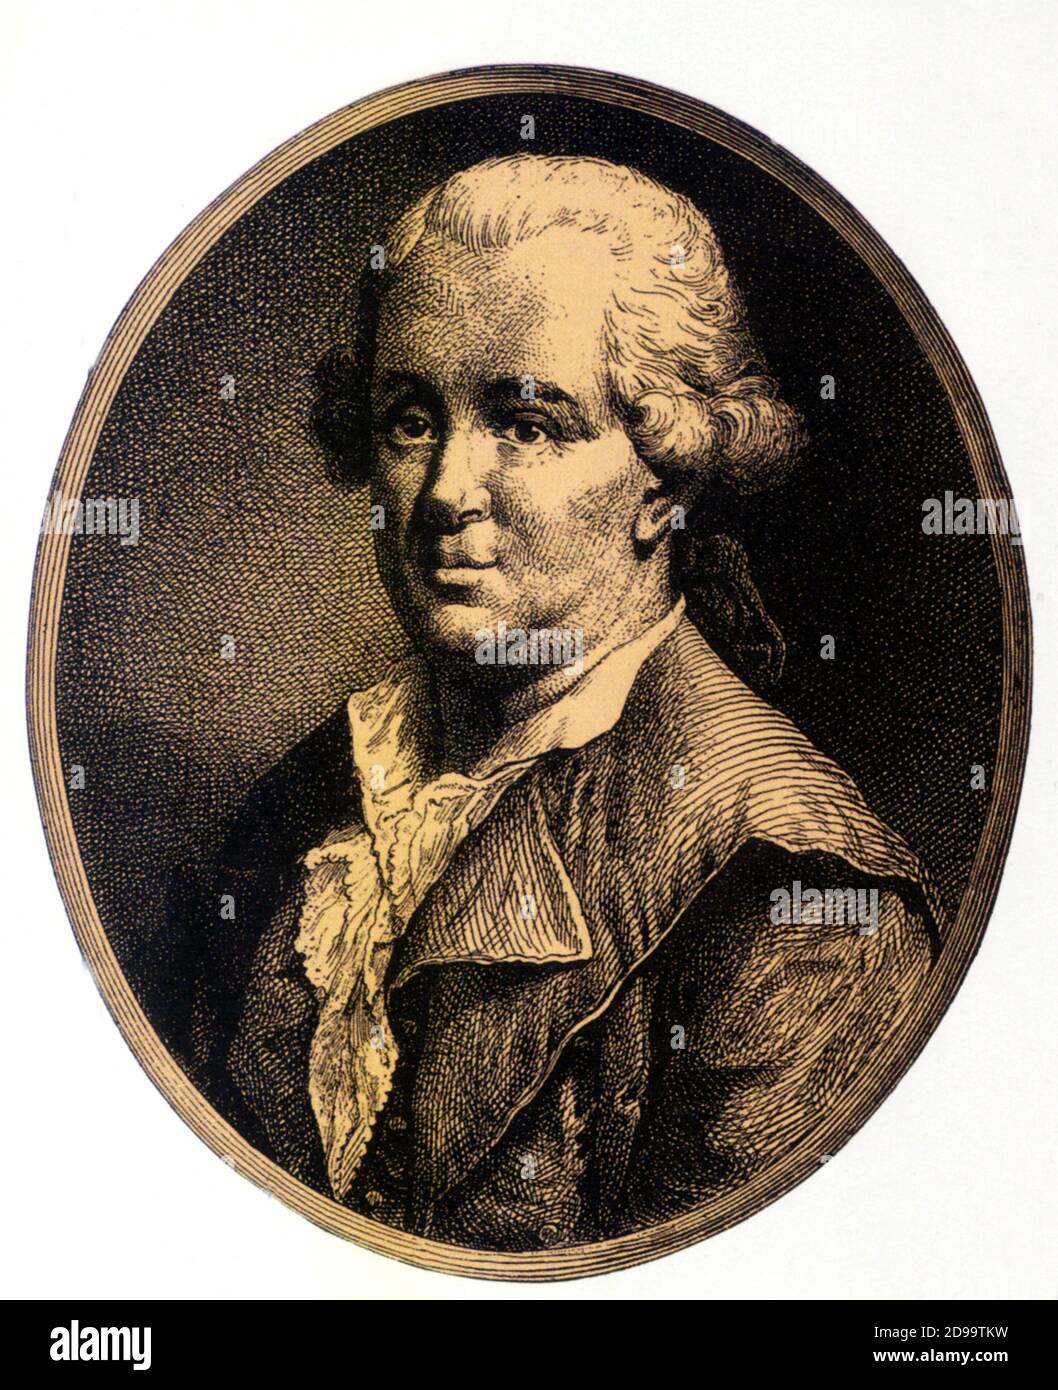 Der berühmte österreichische Arzt Franz Anton MESMER ( 1734 - 1815 ) , Theorie der Magnetfelder und der astrologischen Einfluss der Planeten , Gegründet auf Hypnose und Suggestion - CAMPI MAGNETICI - MAGNETISMO - MEDICINA - Healt - Mago - Magier - ASTROLOGIE - FISICA - MESMERISMO - IPNOTISMO - IPNOTISTA - MESMERISMUS - PARAPSICOLOGIA - PARAPSICOLOGY - Vorschlag ---- Archivio GBB Stockfoto